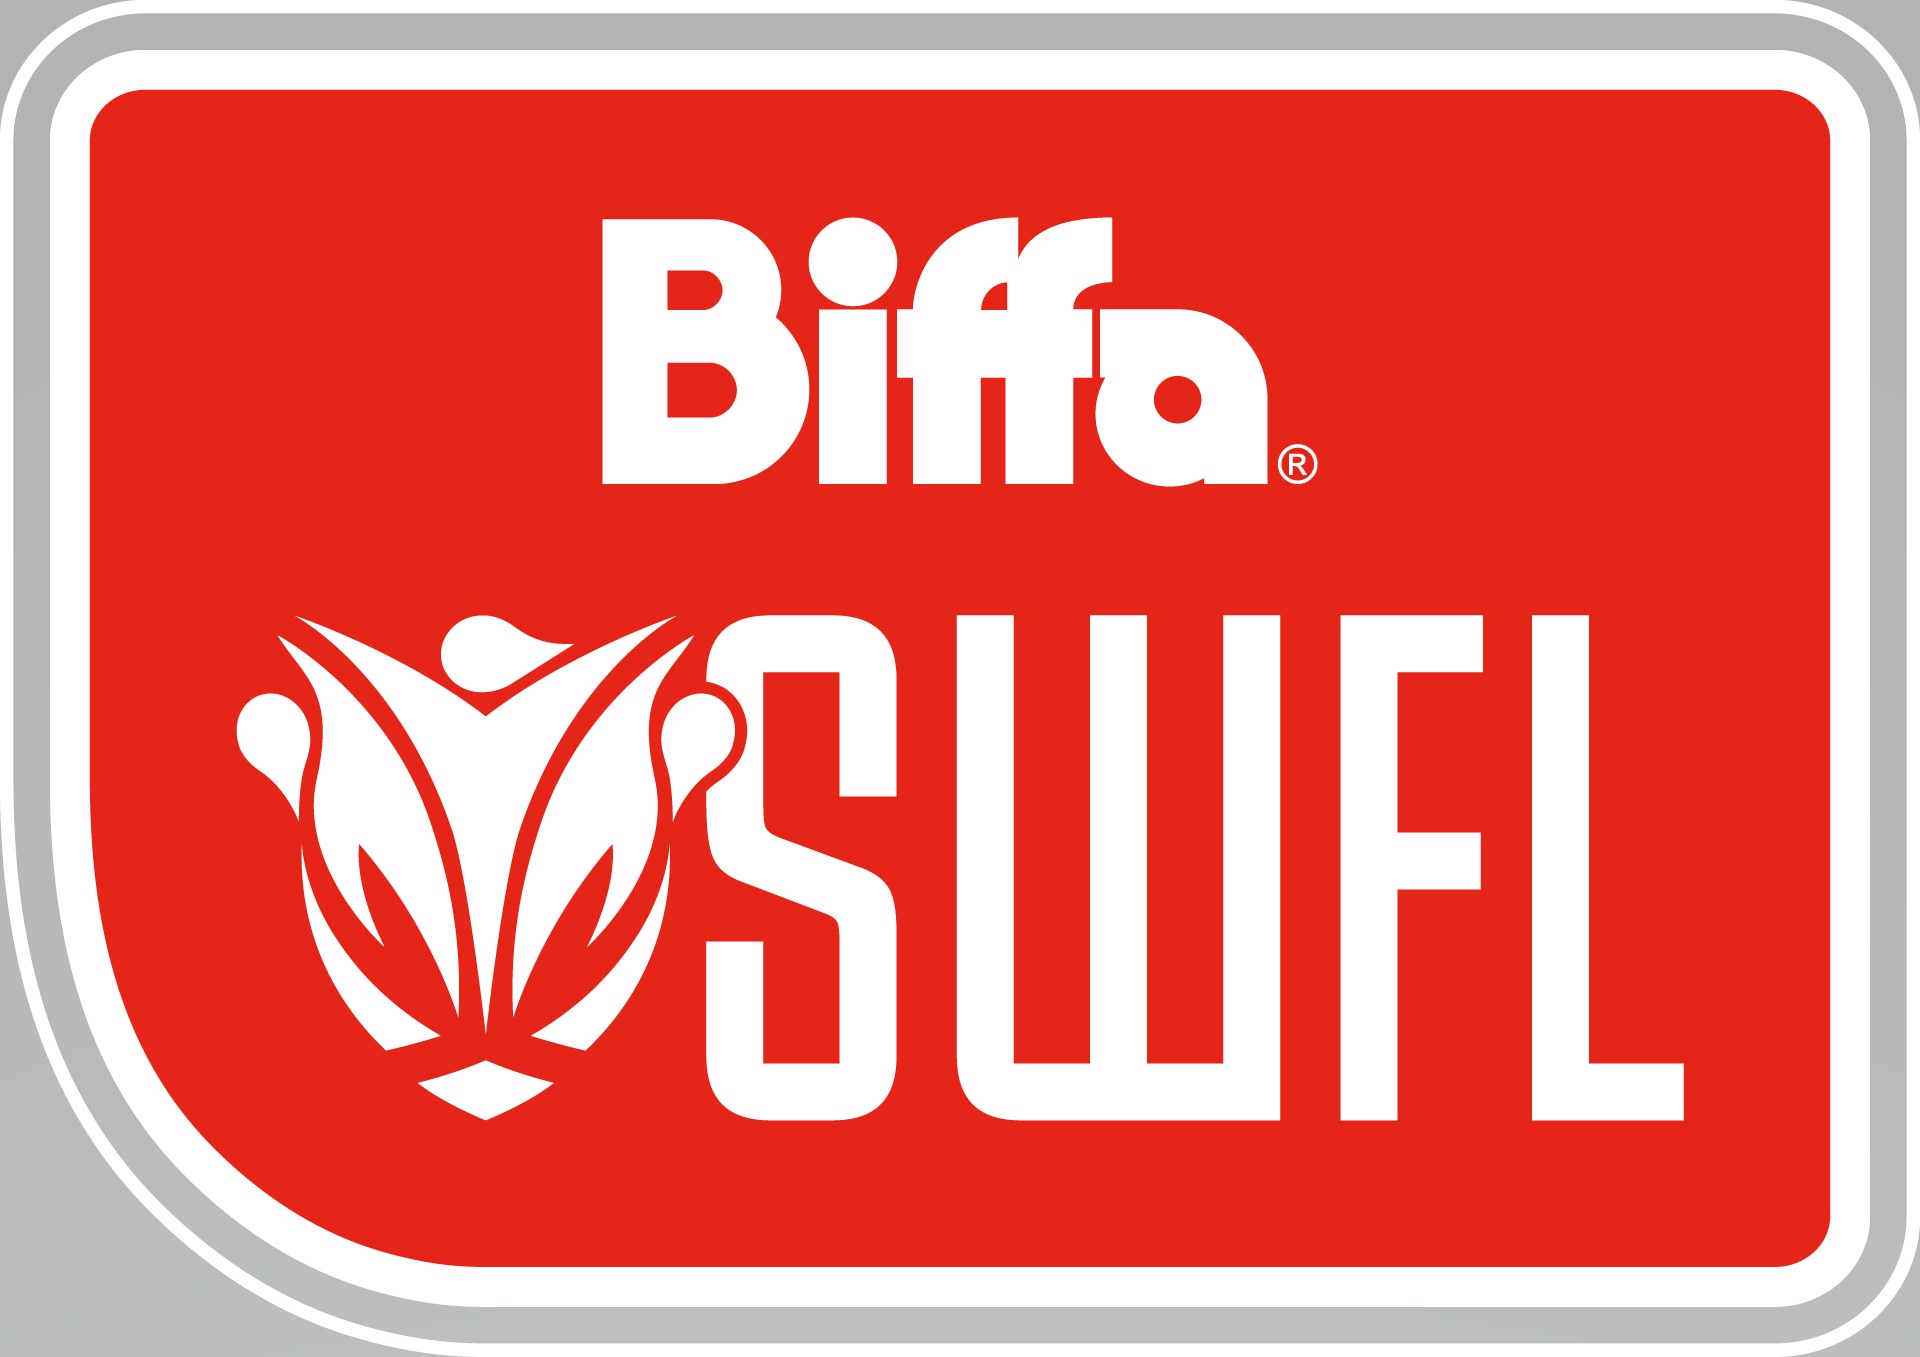 Las nuevas ligas regionales Biffa SWFL se lanzarán en enero